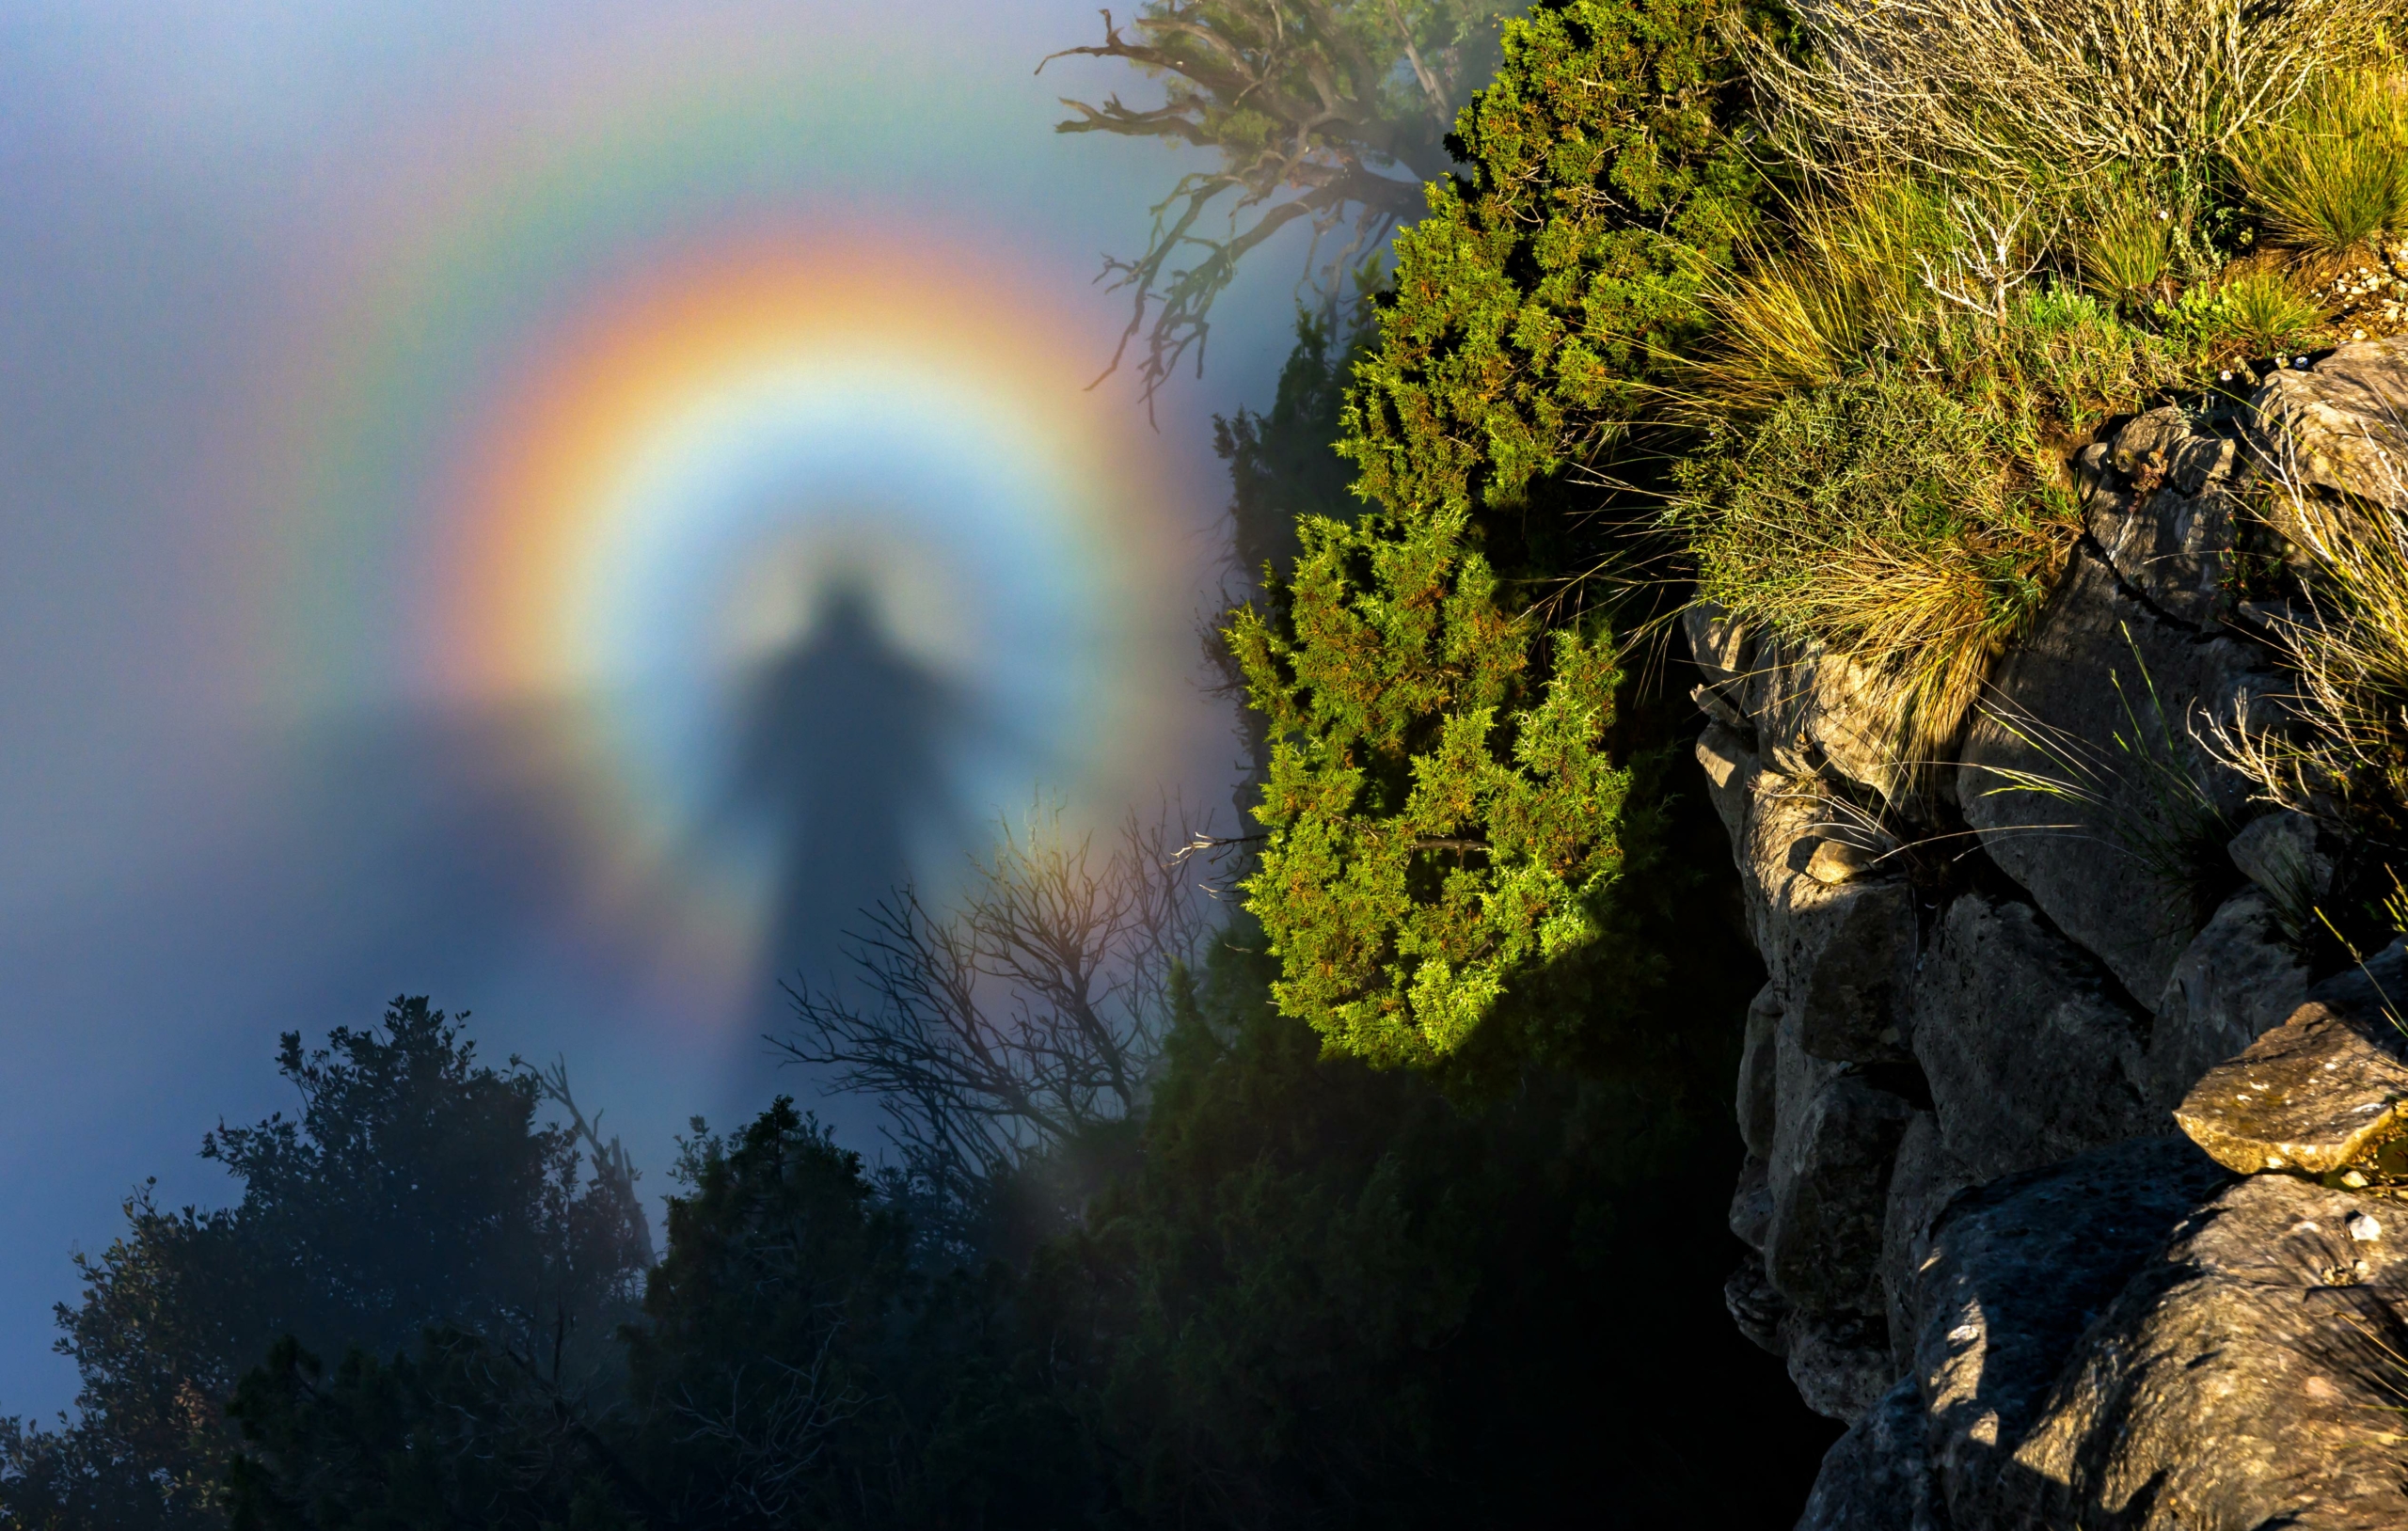 Bức ảnh “Ghost Under the Cliff” (Bóng ma dưới vách đá) của nhiếp ảnh gia Emili Vilamala Benito. (Ảnh: Đăng dưới sự cho phép của ông Emili Vilamala Benito/Hiệp hội Khí tượng Hoàng gia)